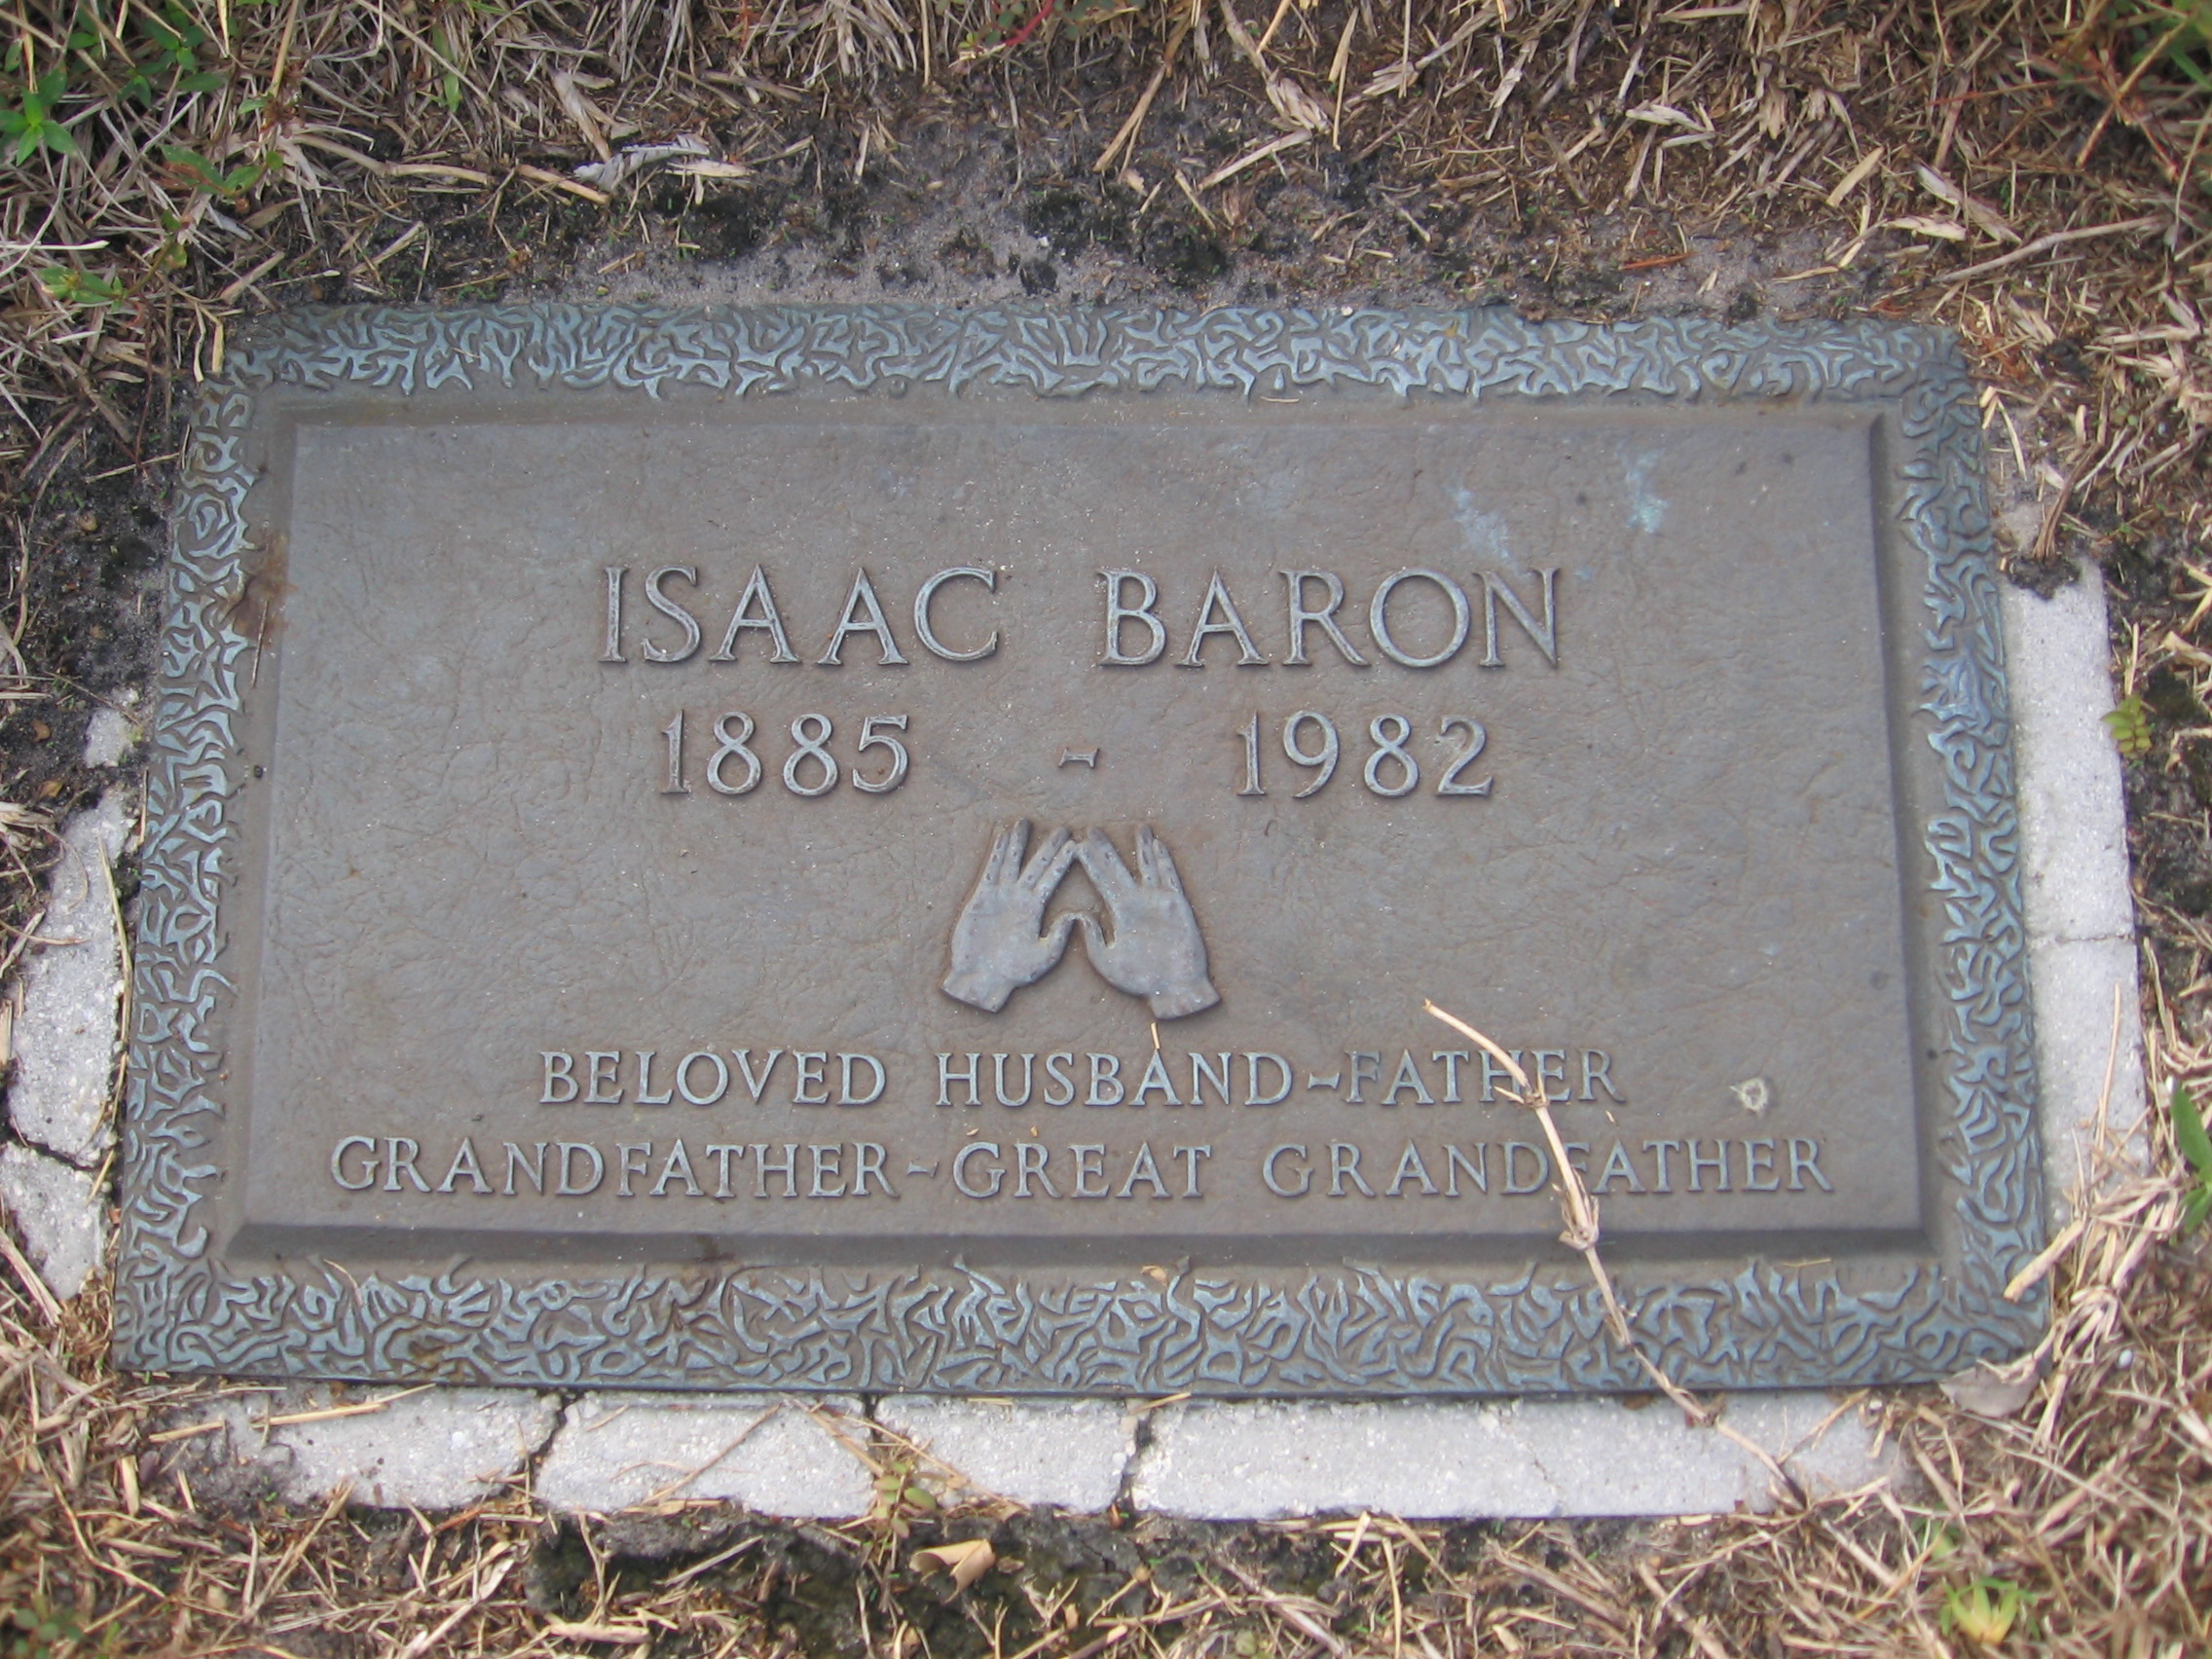 Isaac Baron